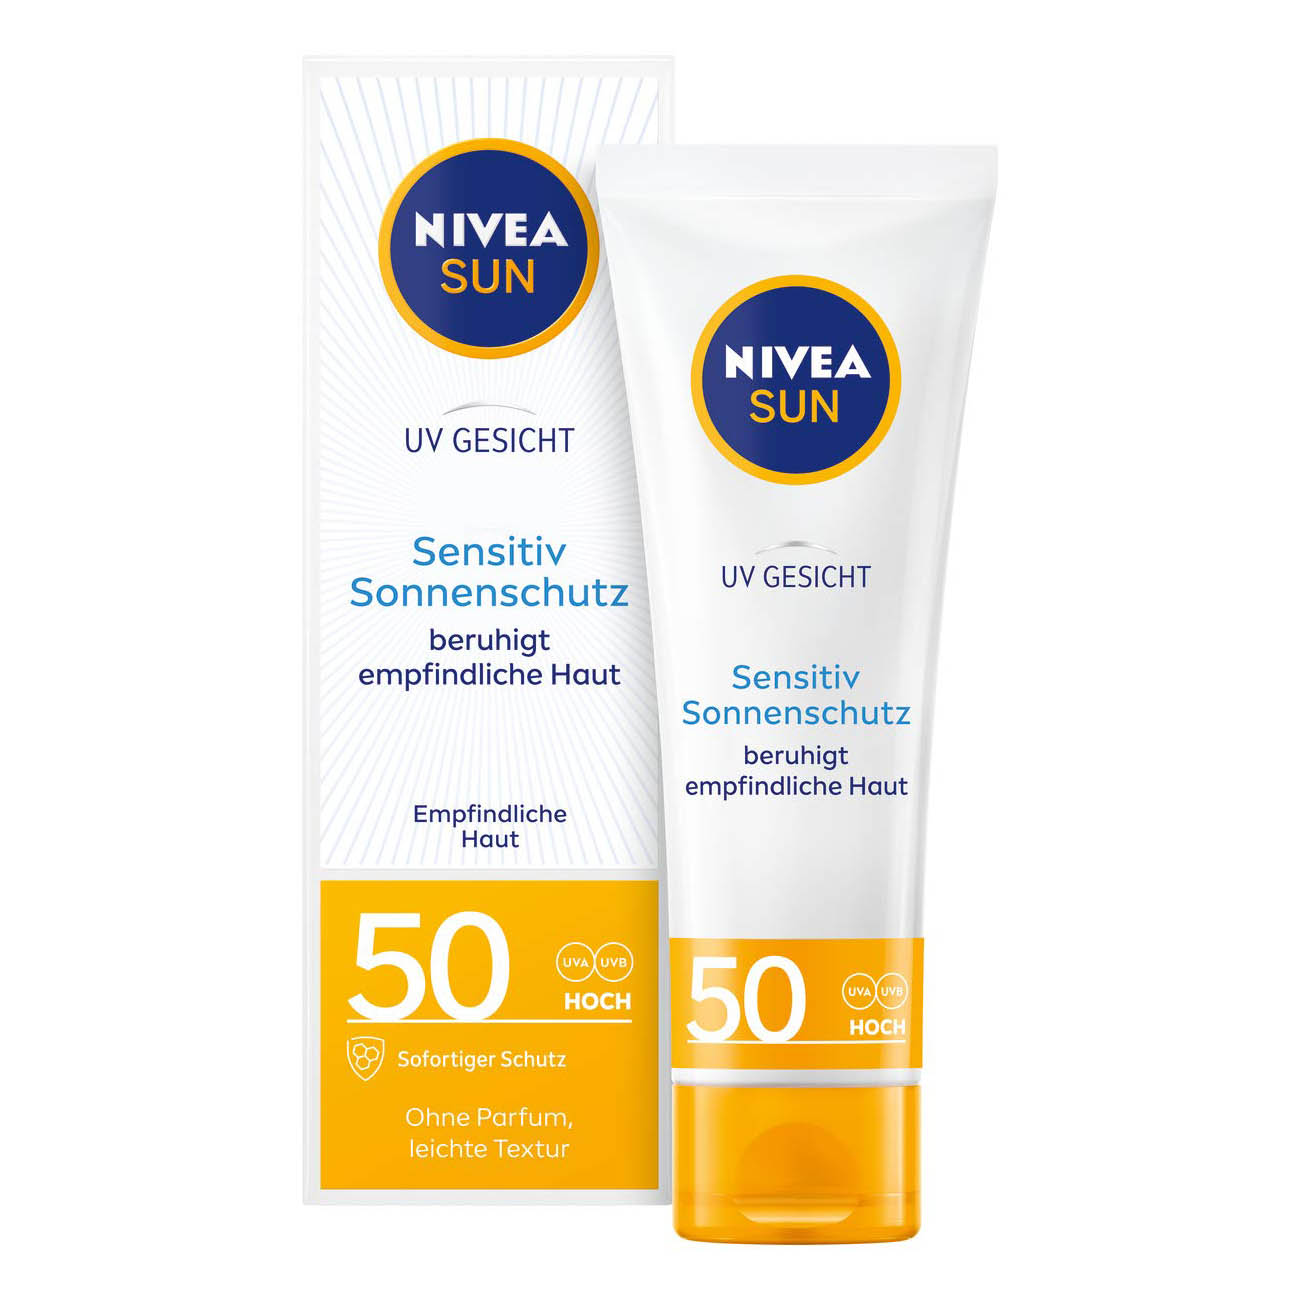 NIVEA SUN UV Gesicht Sensitiv Sonnenschutz SPF 50 plus beruhigt empfindliche Haut kaufen bestellen Preisvergleich billiger Rabattcode Erfahrungen Empfehlung Review